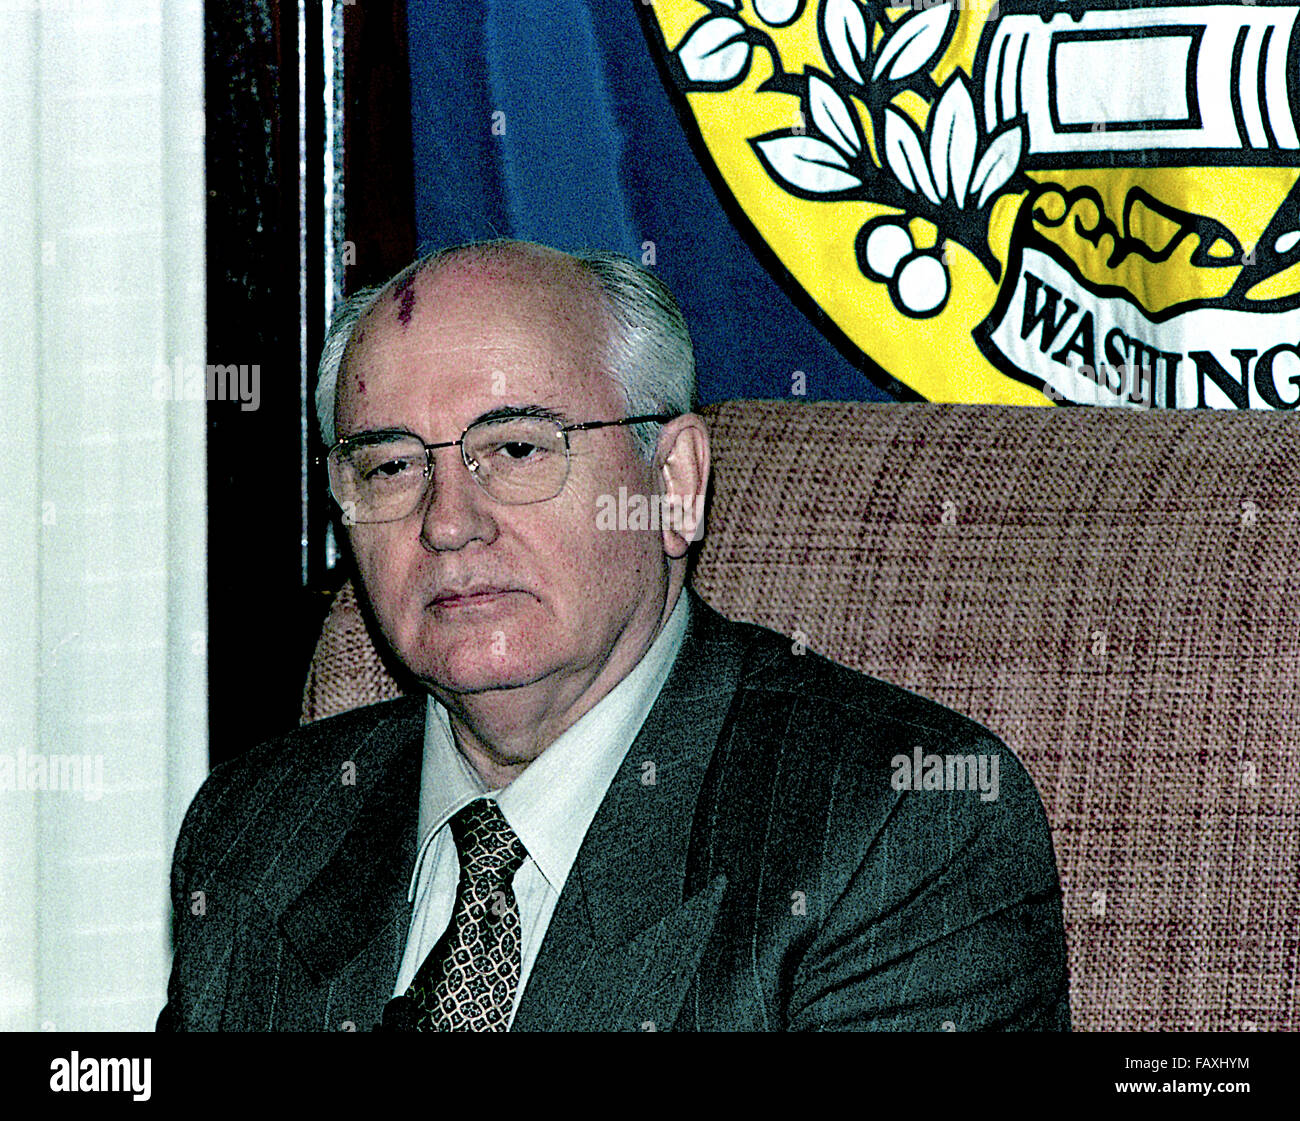 Washington, DC., 25 octobre 1996, Mikhaïl Sergueïevitch Gorbatchev au National Press Club. Il était le huitième et dernier chef de l'Union soviétique, ayant servi comme Secrétaire Général du Parti communiste de l'Union soviétique de 1985 à 1991, lorsque le parti a été dissous. Il a occupé le poste de chef de l'Etat à partir de 1988 jusqu'à sa dissolution en 1991 (le titre de président du Présidium du Soviet suprême de 1988 à 1989, en tant que Président du Soviet suprême de 1989 à 1990, et comme président de l'Union soviétique de 1990 à 1991) Credit : Mark Reinstein Banque D'Images